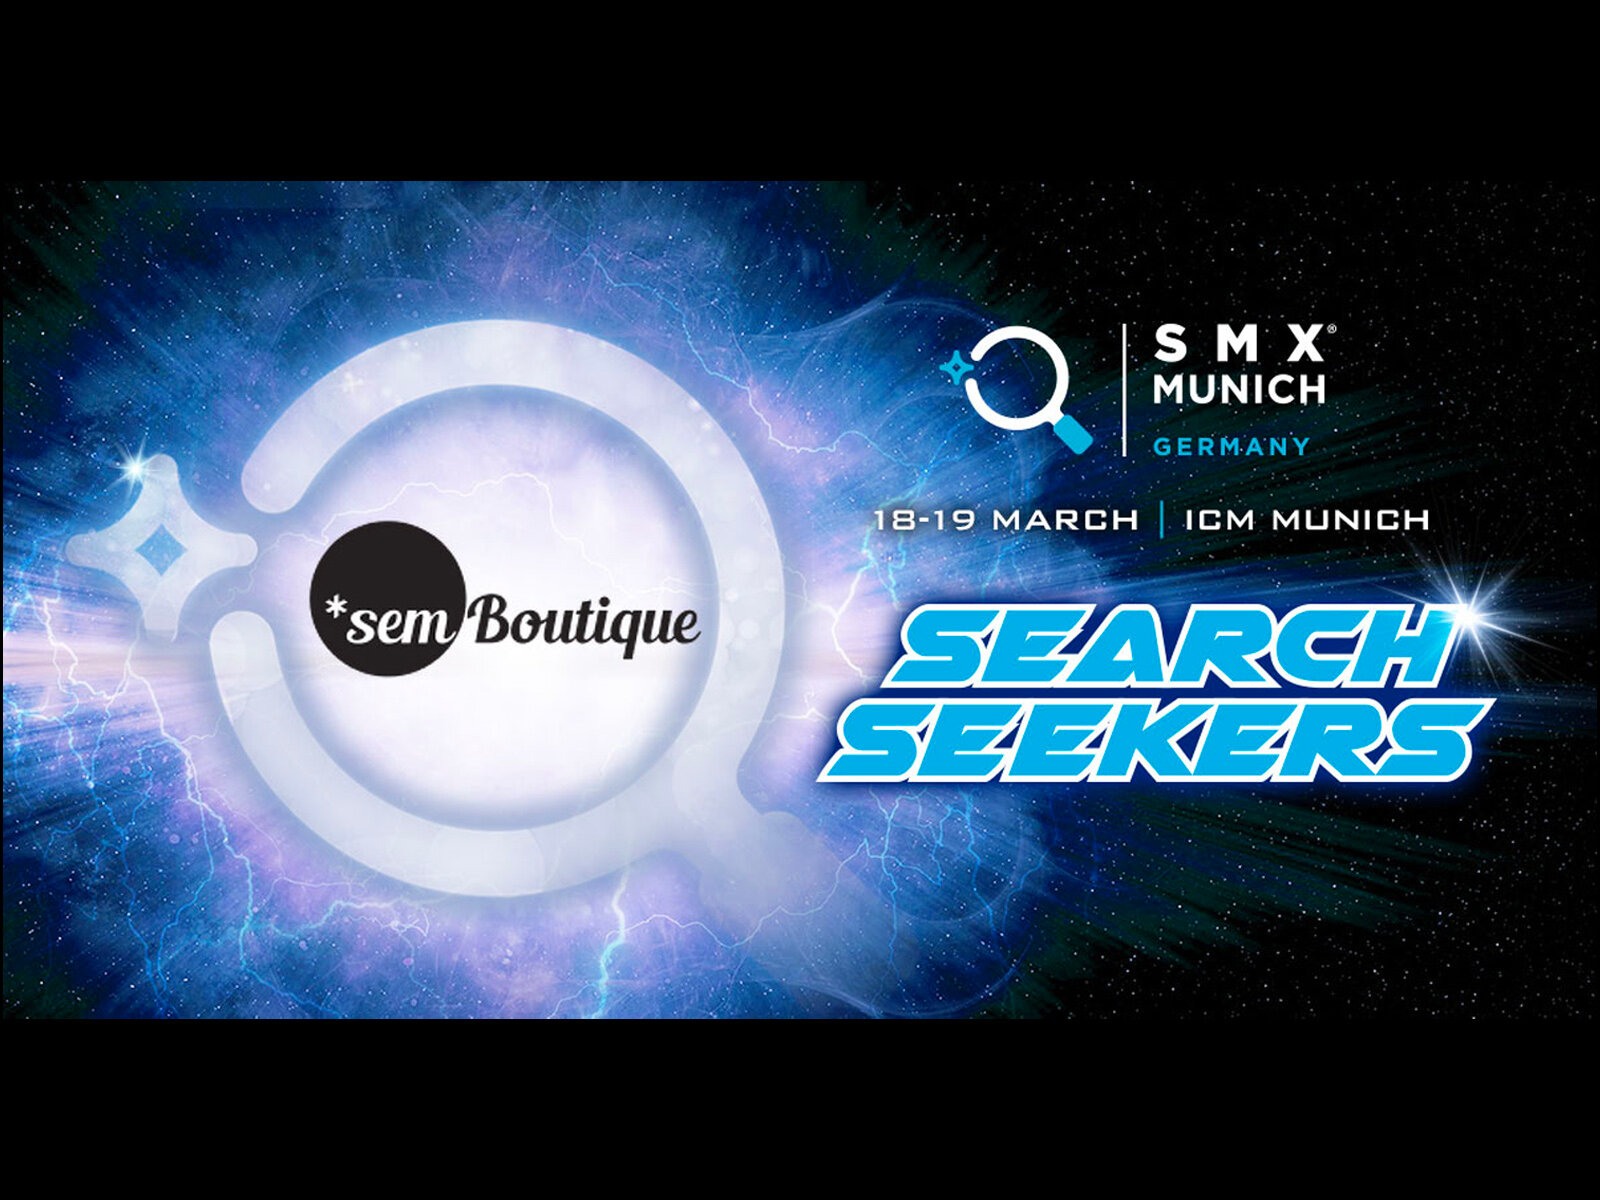 Search Seekers